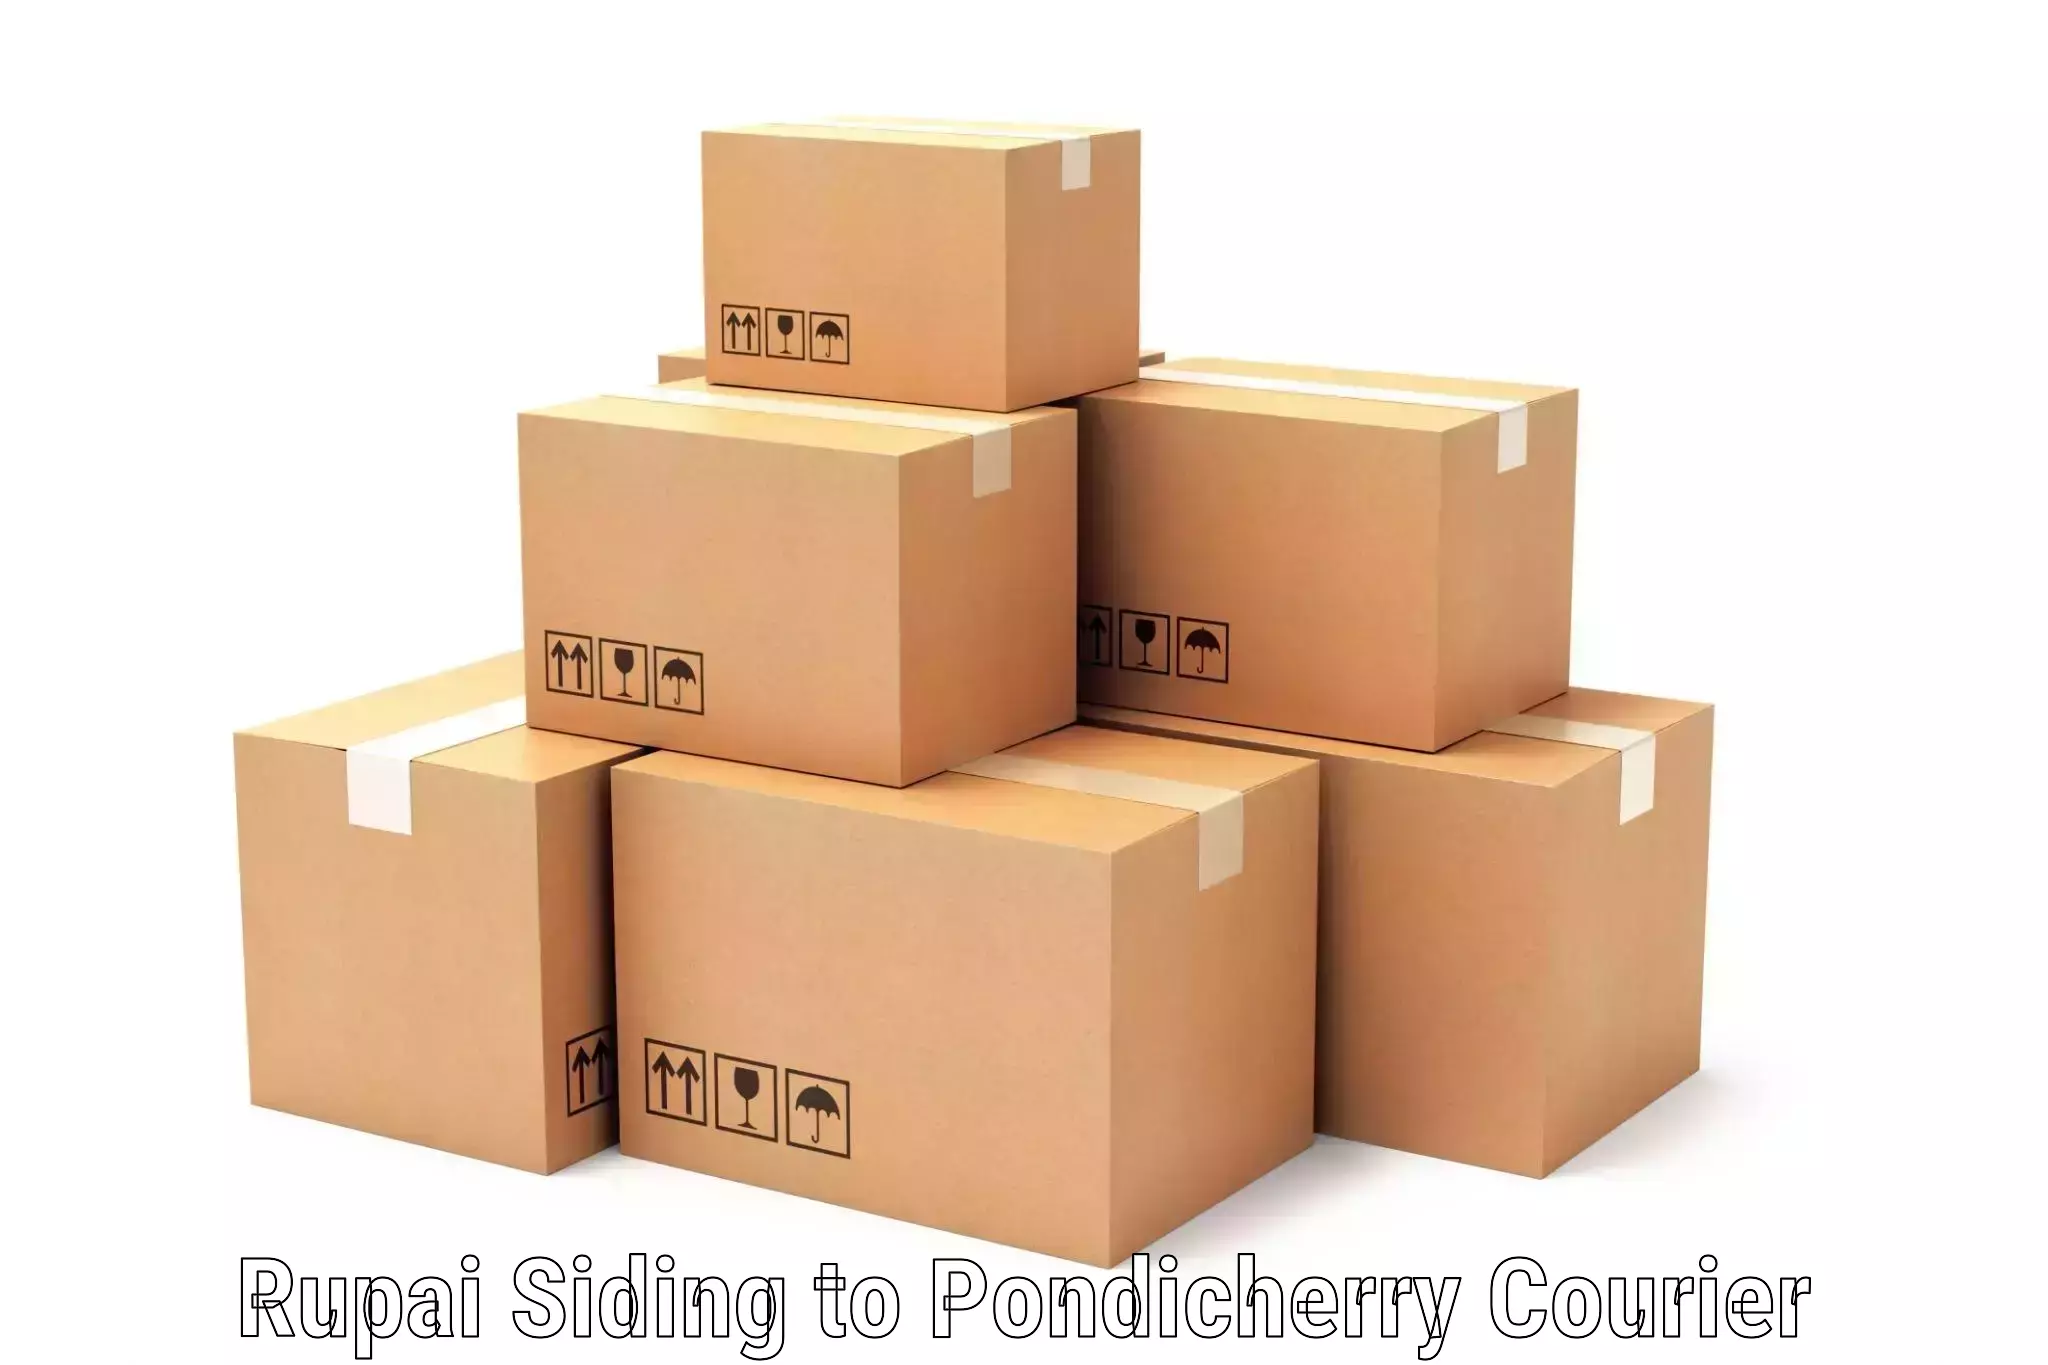 Customized shipping options Rupai Siding to Metttupalayam